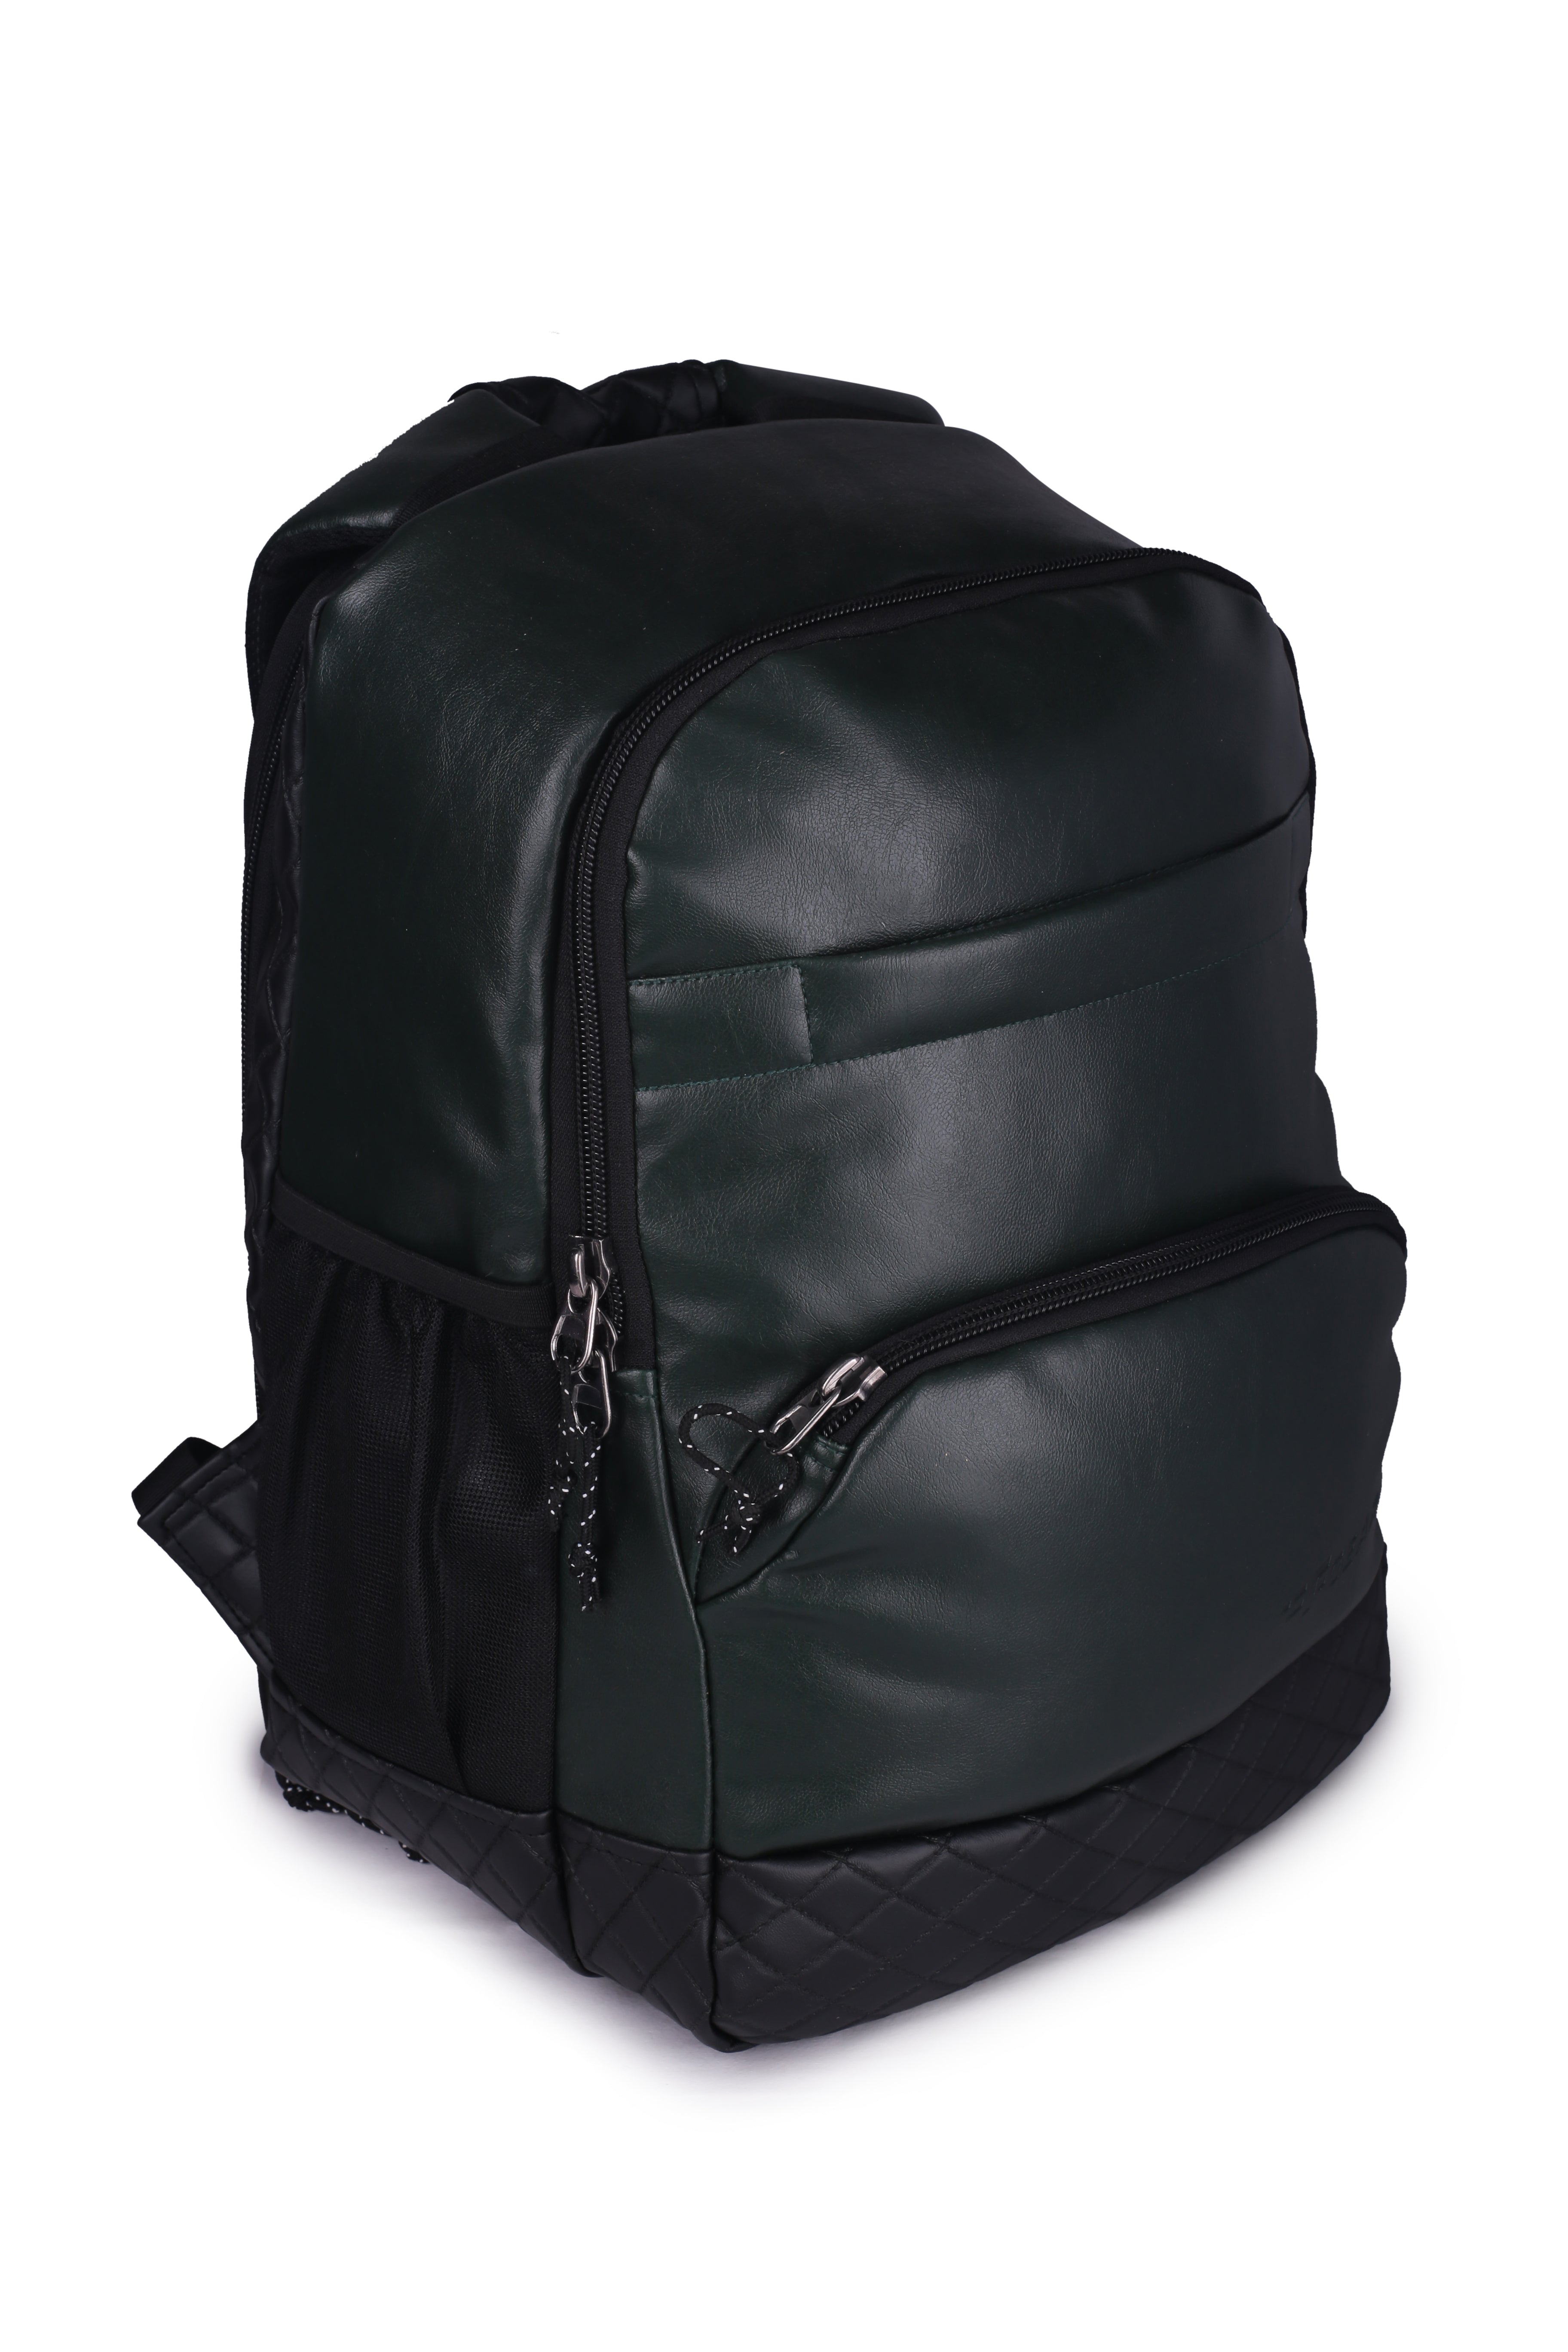 Convertible Backpack Purse Shoulder Bag Women, Soft Leather Backpack Into  Bucket Style Bag, Olive Green Hobo Large, Big Transformer Rucksack - Etsy